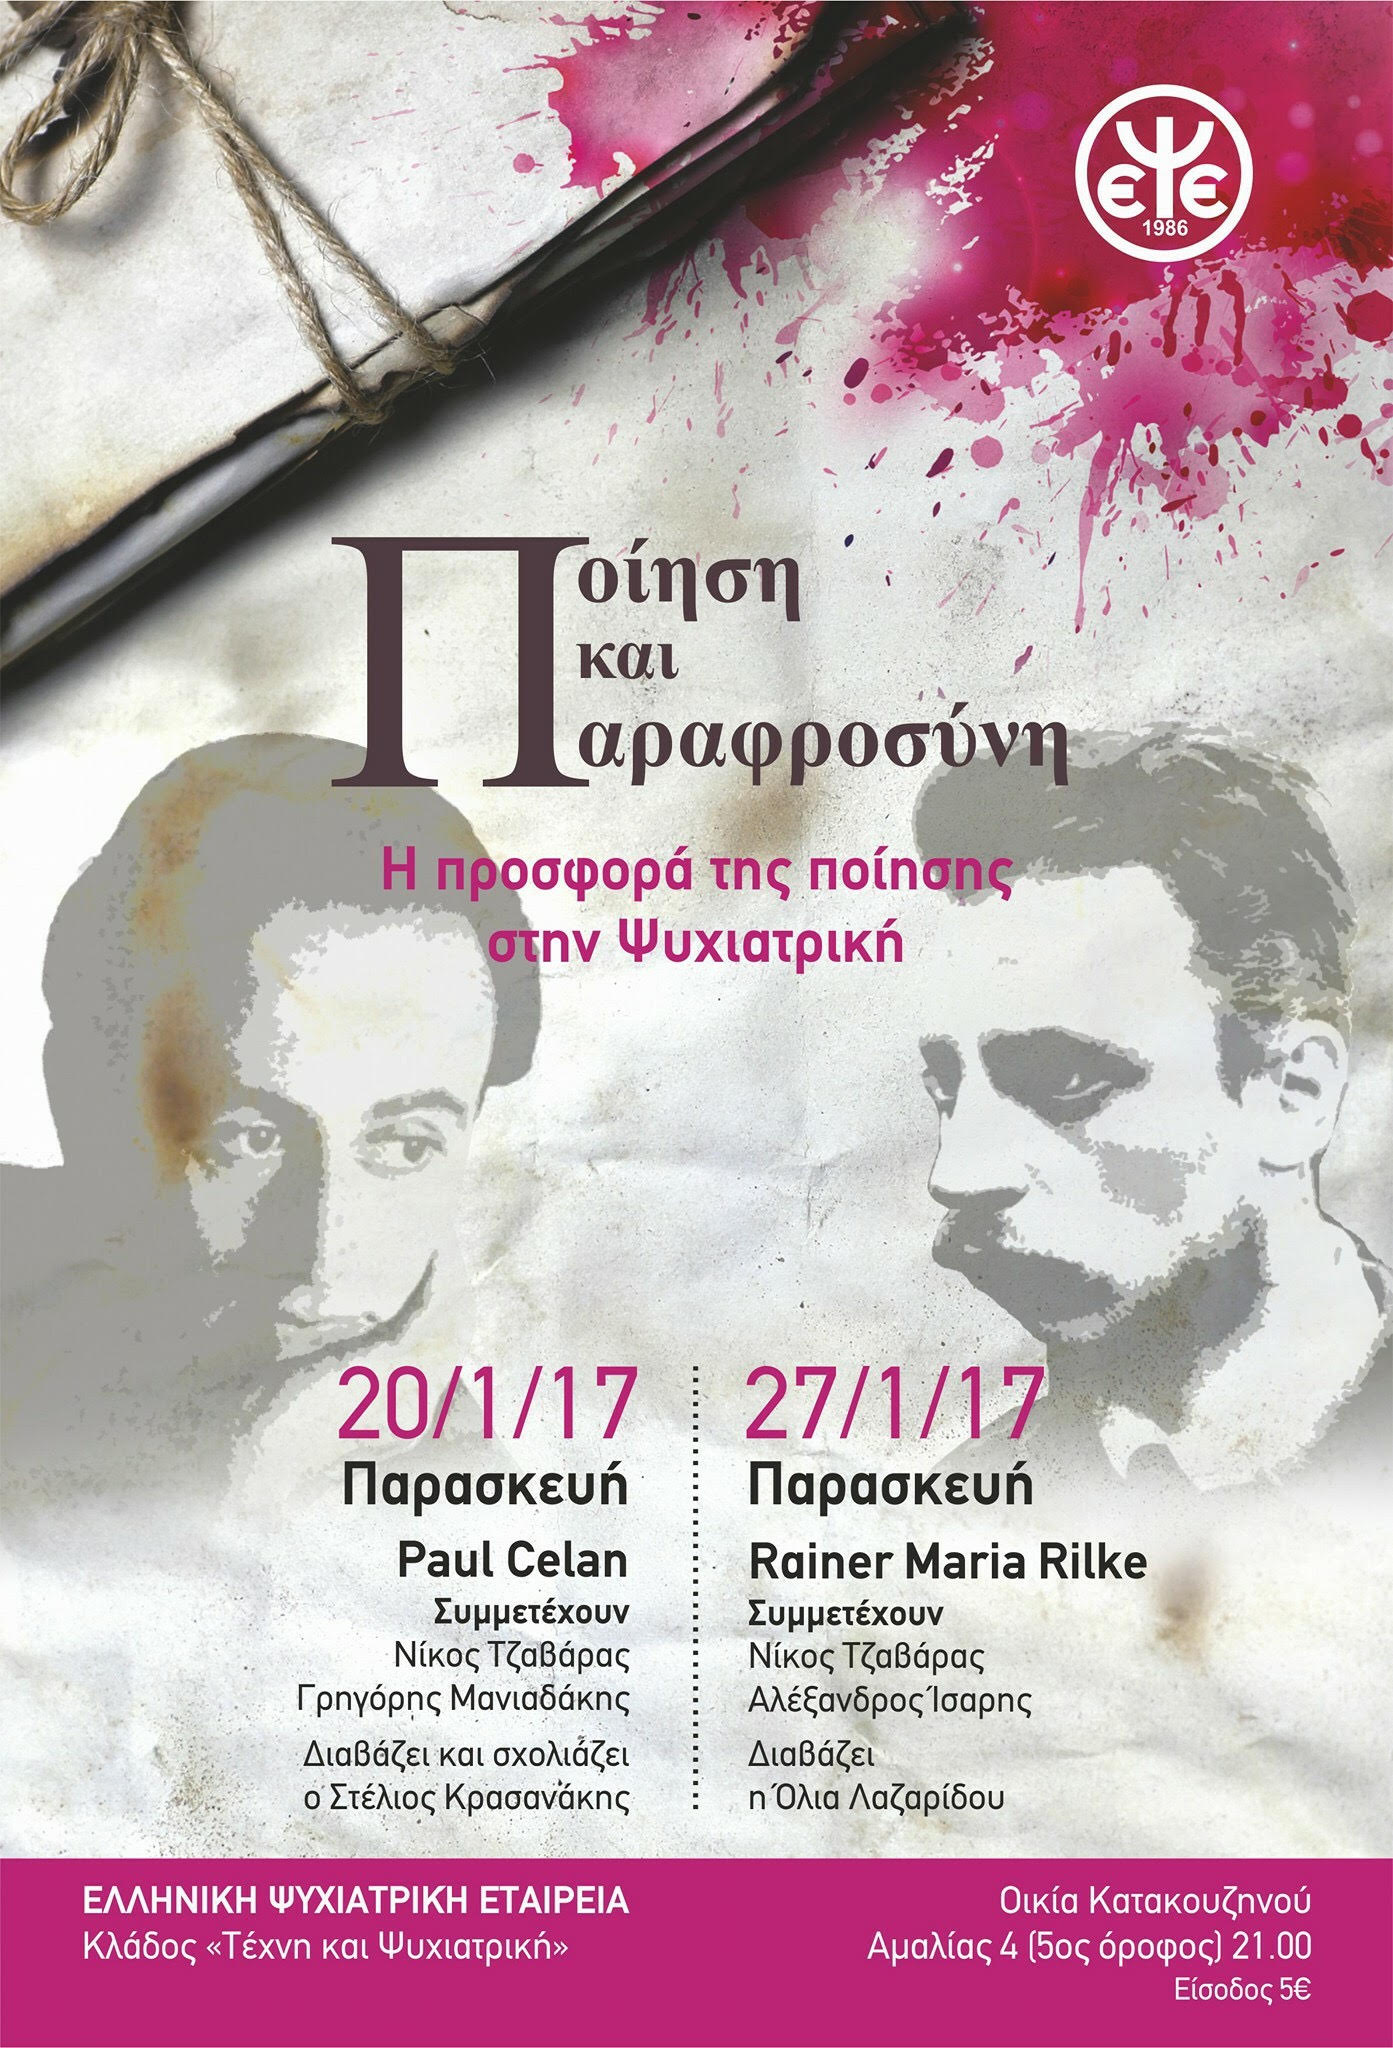 αφίσα της διοργάνωσης Ποίηση και Παραφροσύνη της Ελληνικής Ψυχιατρικής Εταιρείας